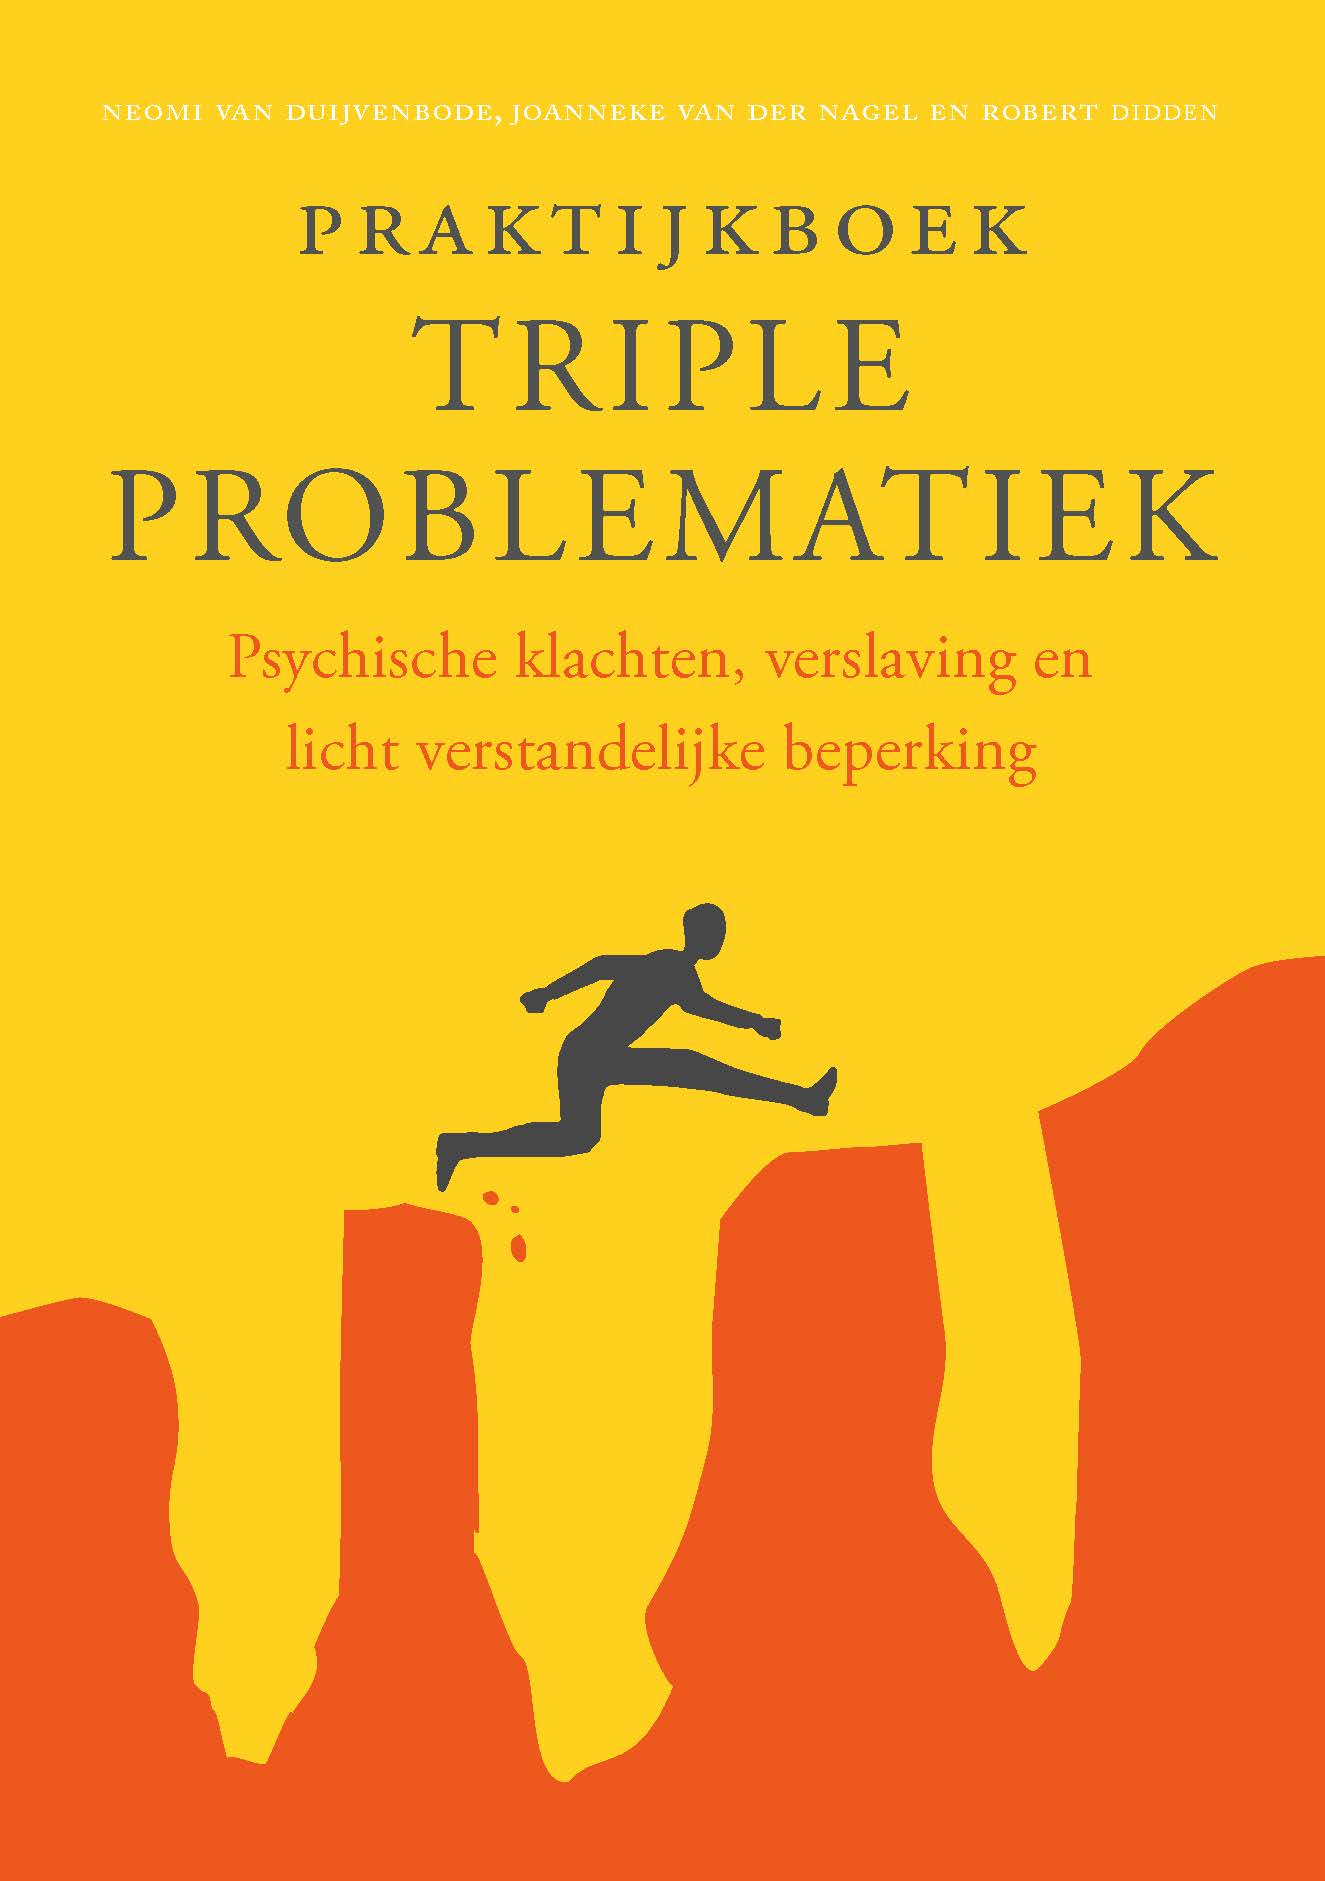 Praktijkboek triple problematiek